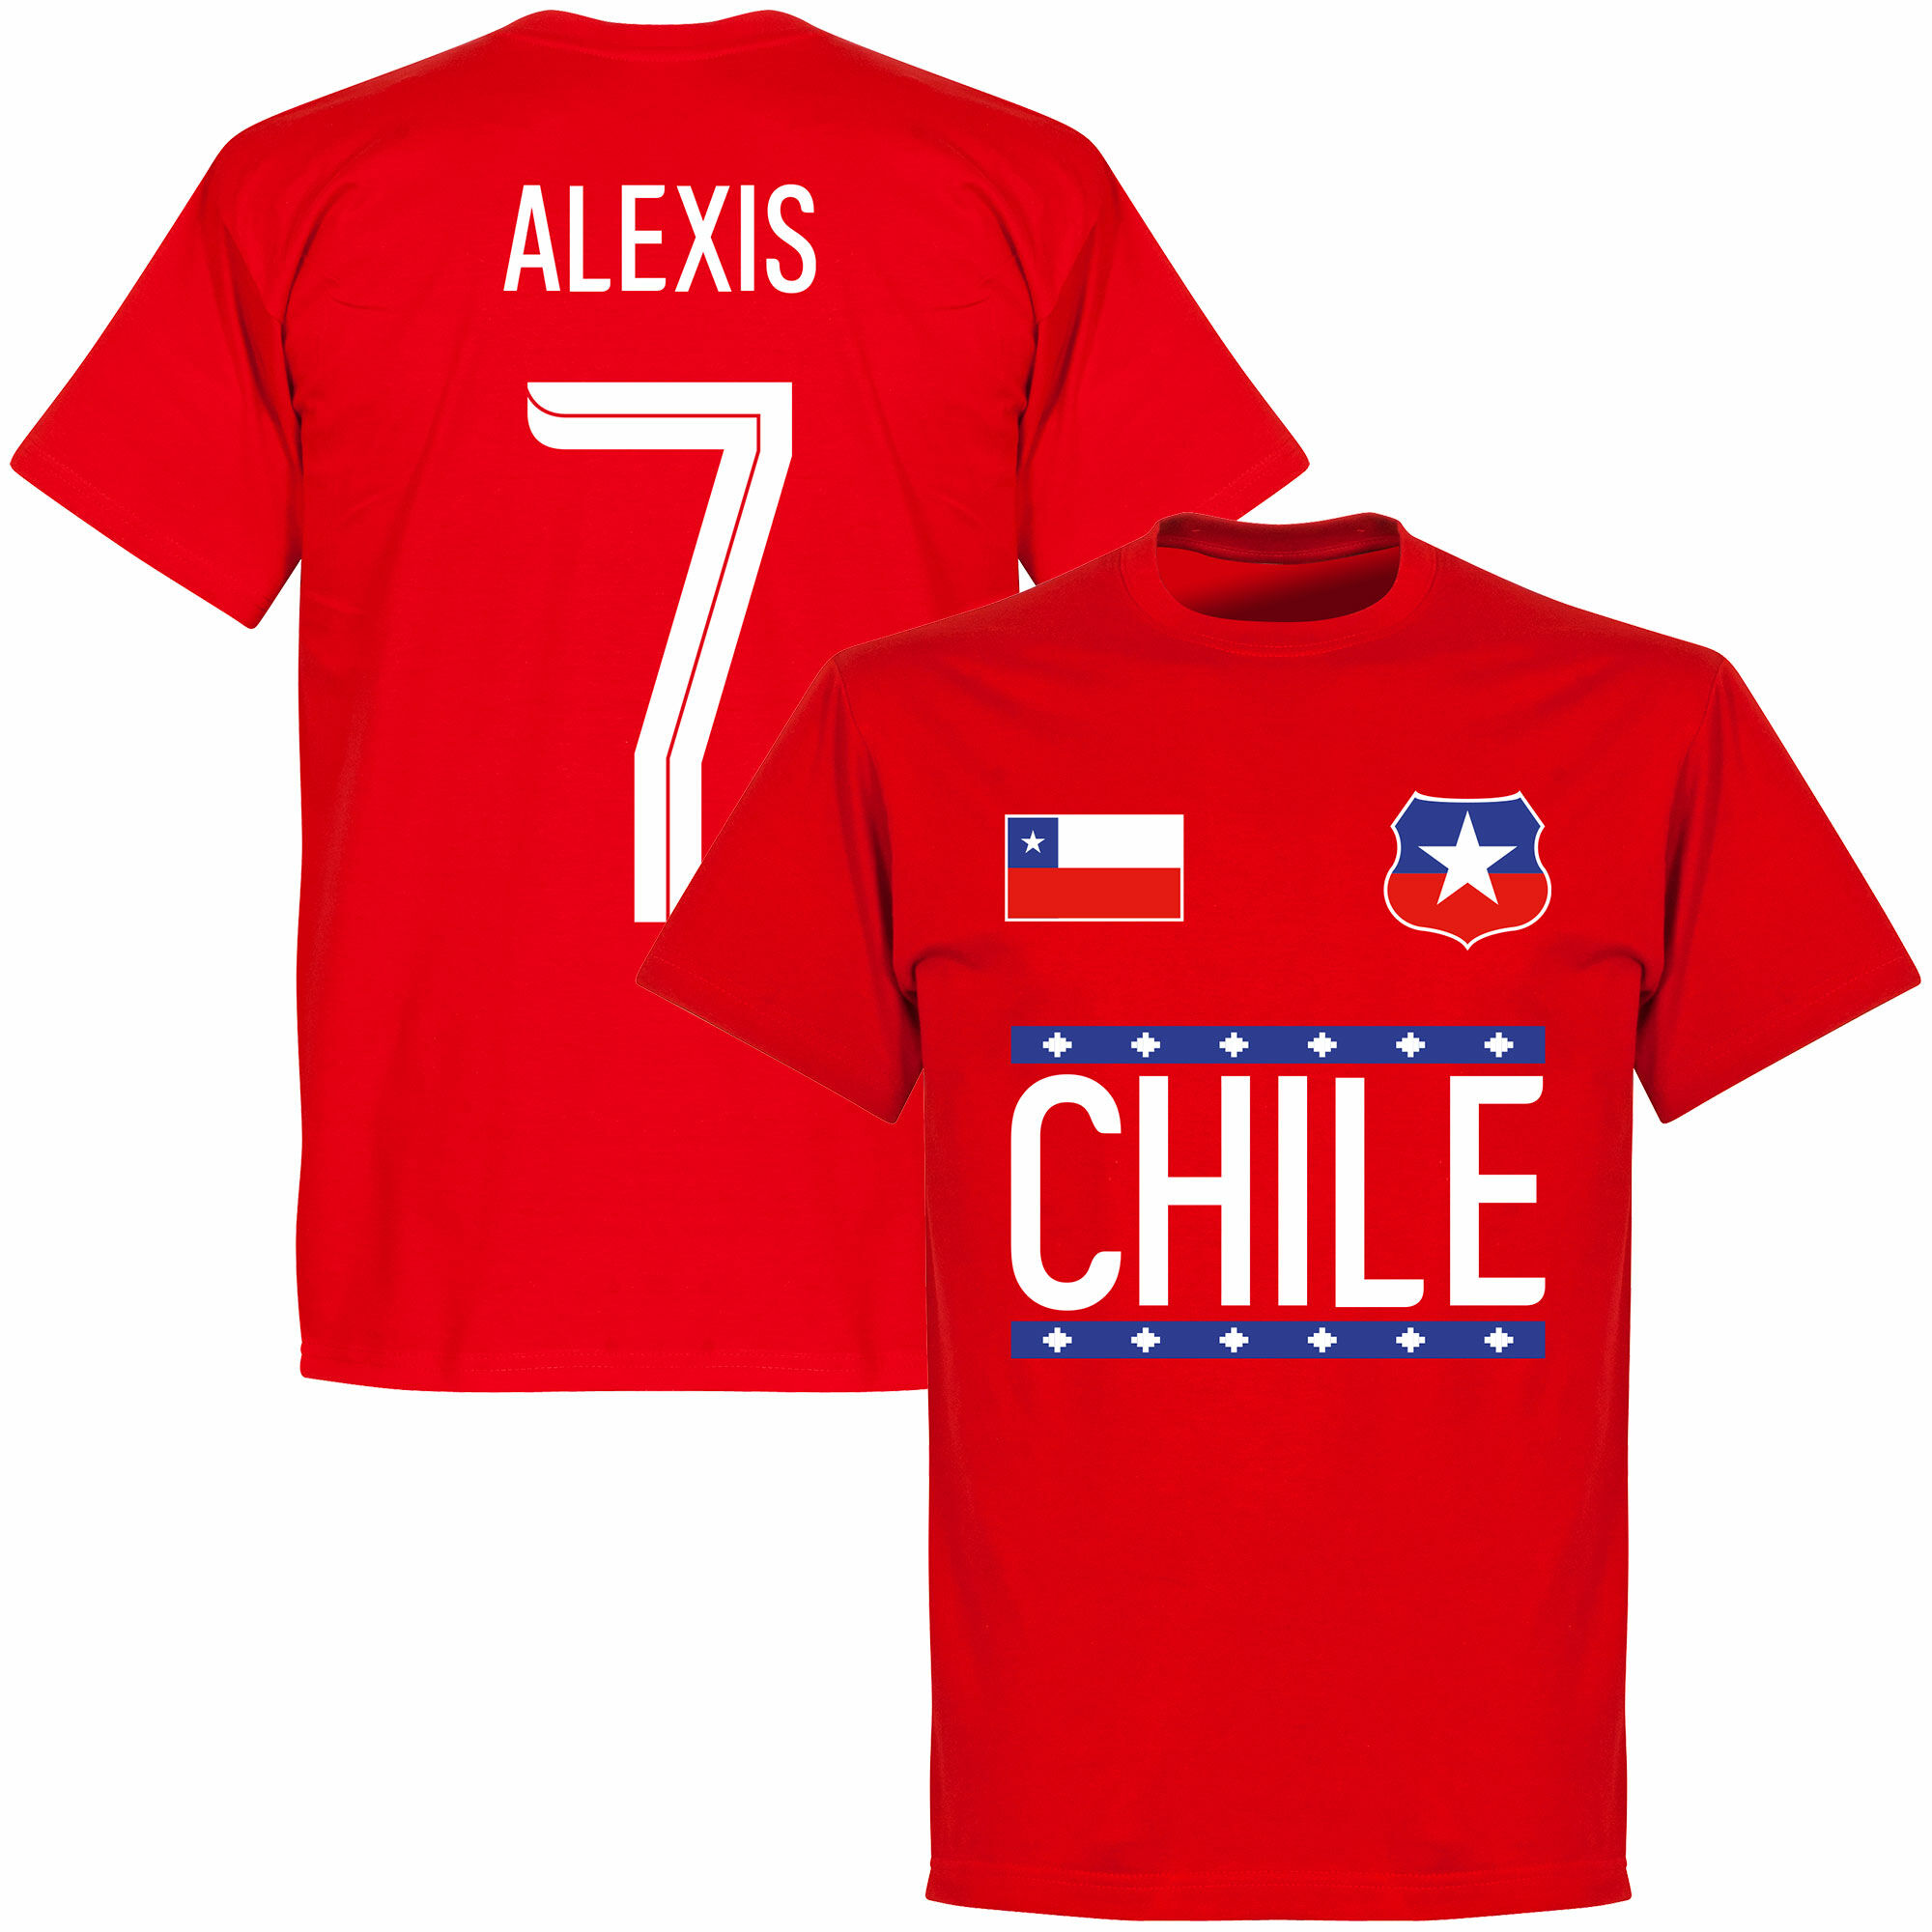 Chile - Tričko - červené, číslo 7, Alexis Sánchez